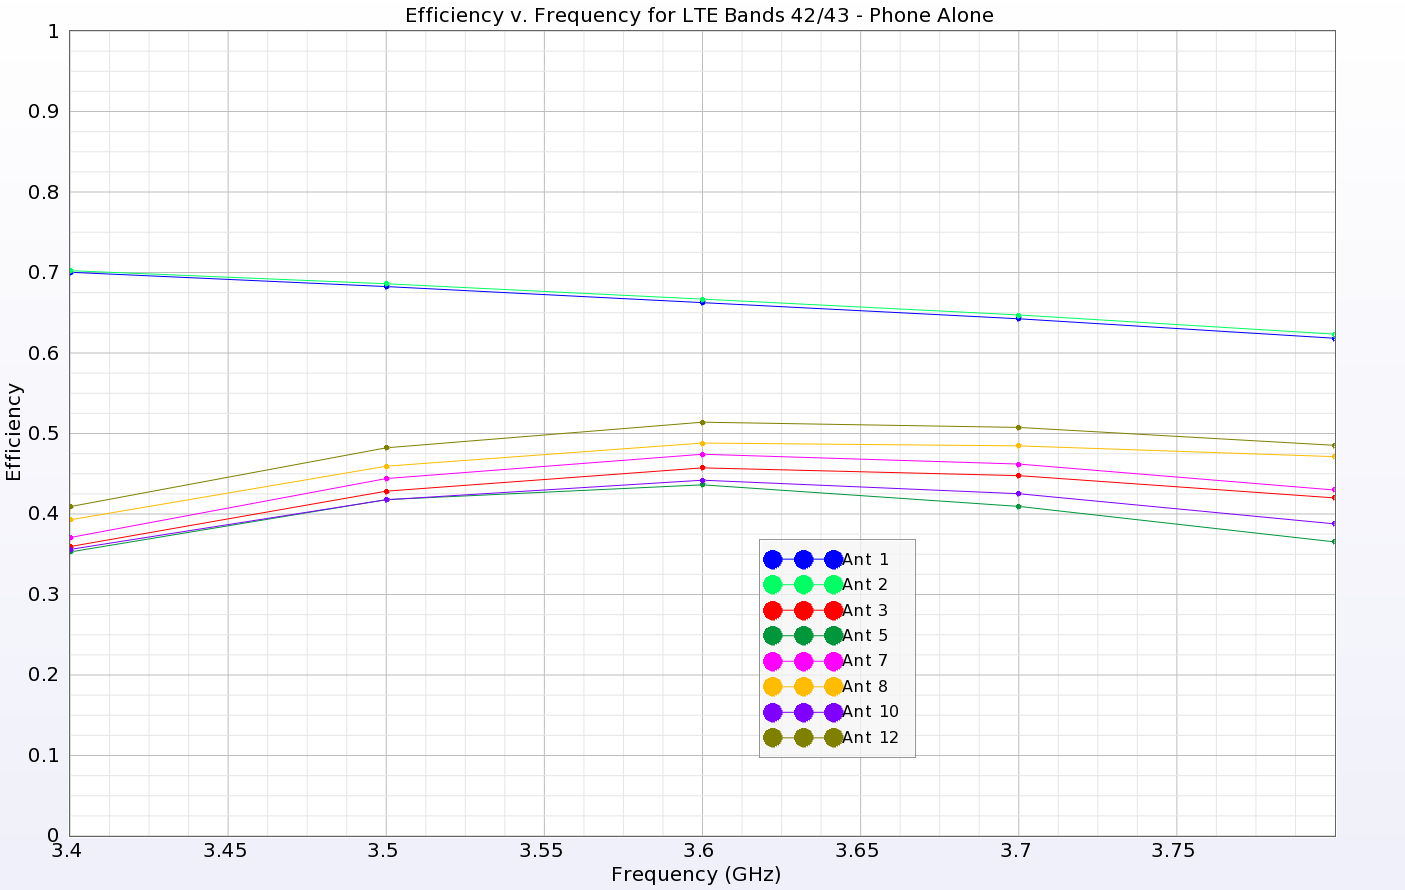 図8: LTEバンド42/43のアンテナの効率を示す。電話機の両端にある2つのIAアンテナ（1と2）は60%以上の高い効率を示すが、電話機の側面にあるLAアンテナは35～50%の低い効率である...。